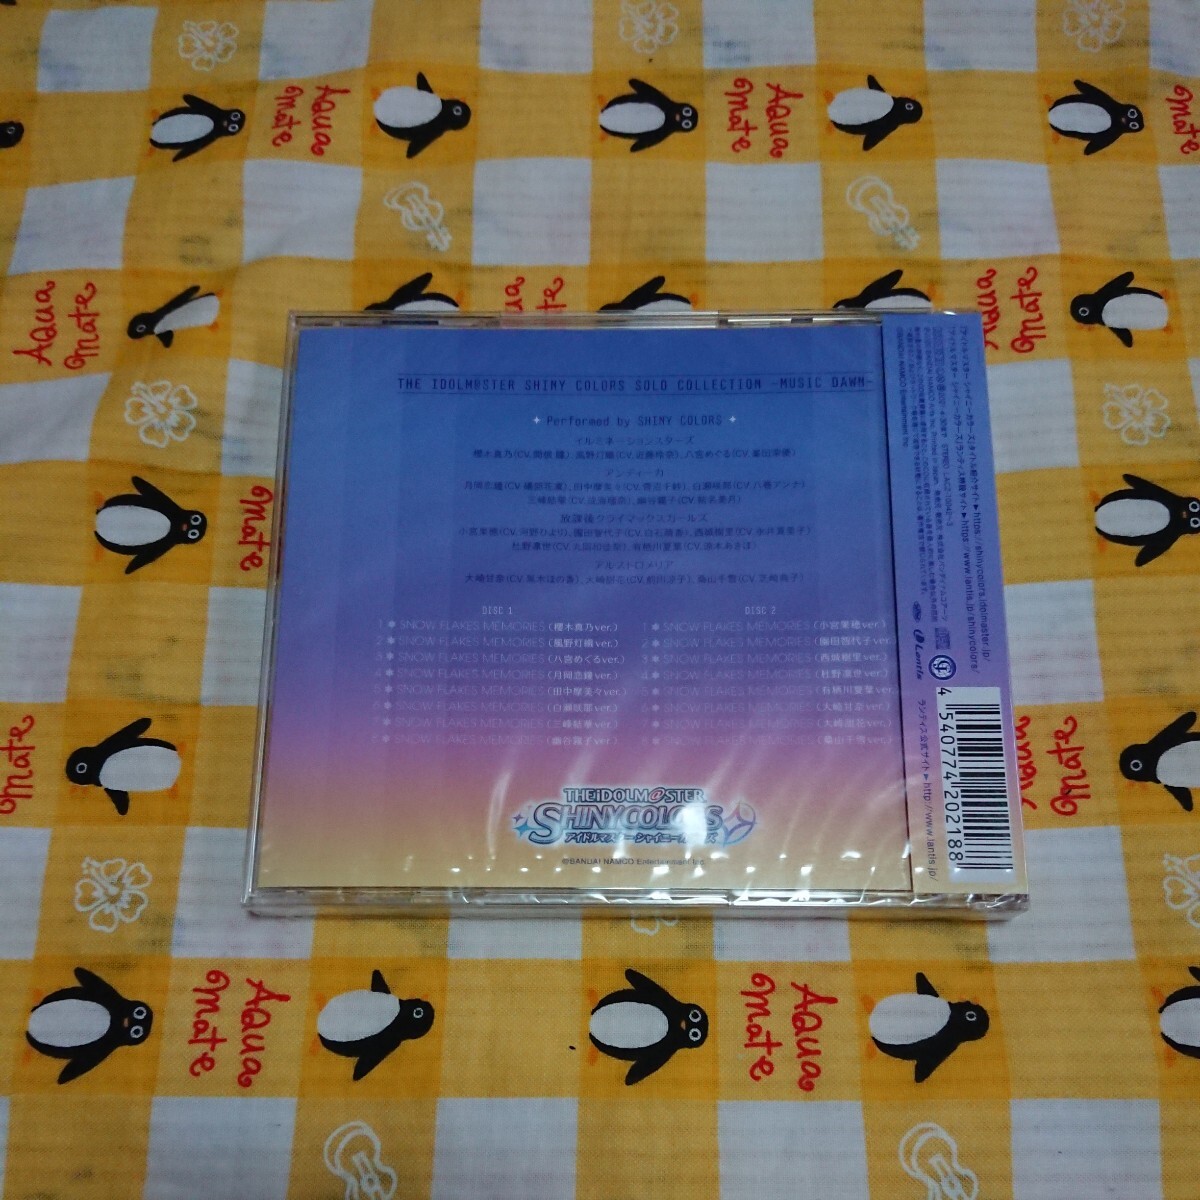 新品未開封 THE IDOLM@STER SHINY COLORS SOLO COLLECTION MUSIC DAWN アイドルマスター シャイニーカラーズ CD 2枚組 送料無料